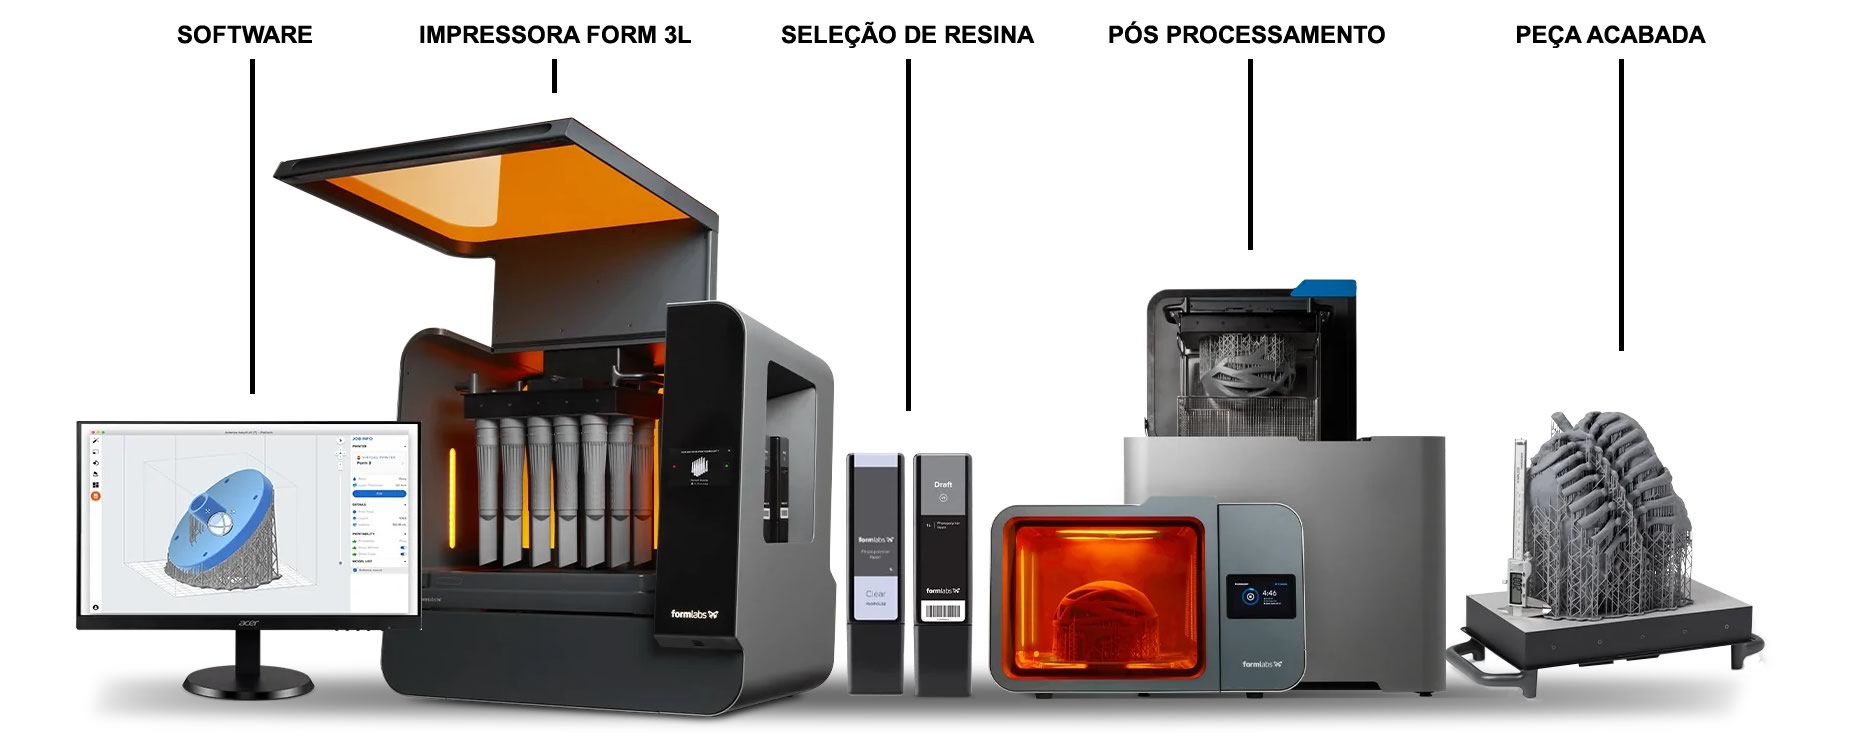 Impressora 3D Form 3L Ecossistema Formlabs - Fesmo Distribuidor oficial Formlabs no Brasil